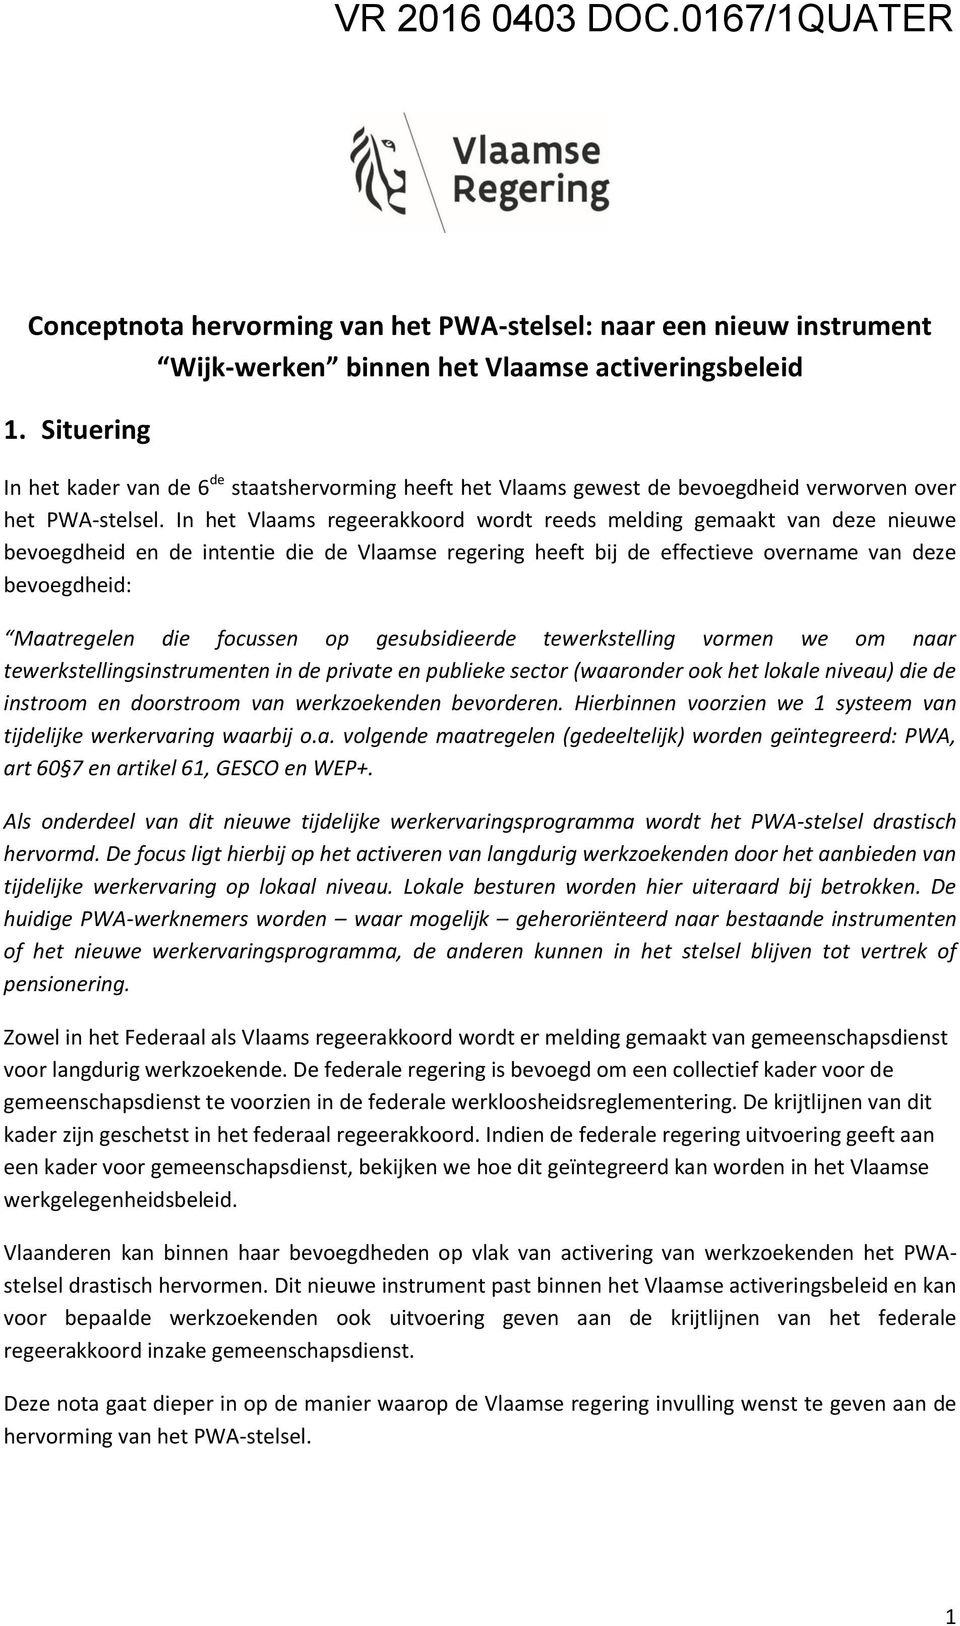 In het Vlaams regeerakkoord wordt reeds melding gemaakt van deze nieuwe bevoegdheid en de intentie die de Vlaamse regering heeft bij de effectieve overname van deze bevoegdheid: Maatregelen die